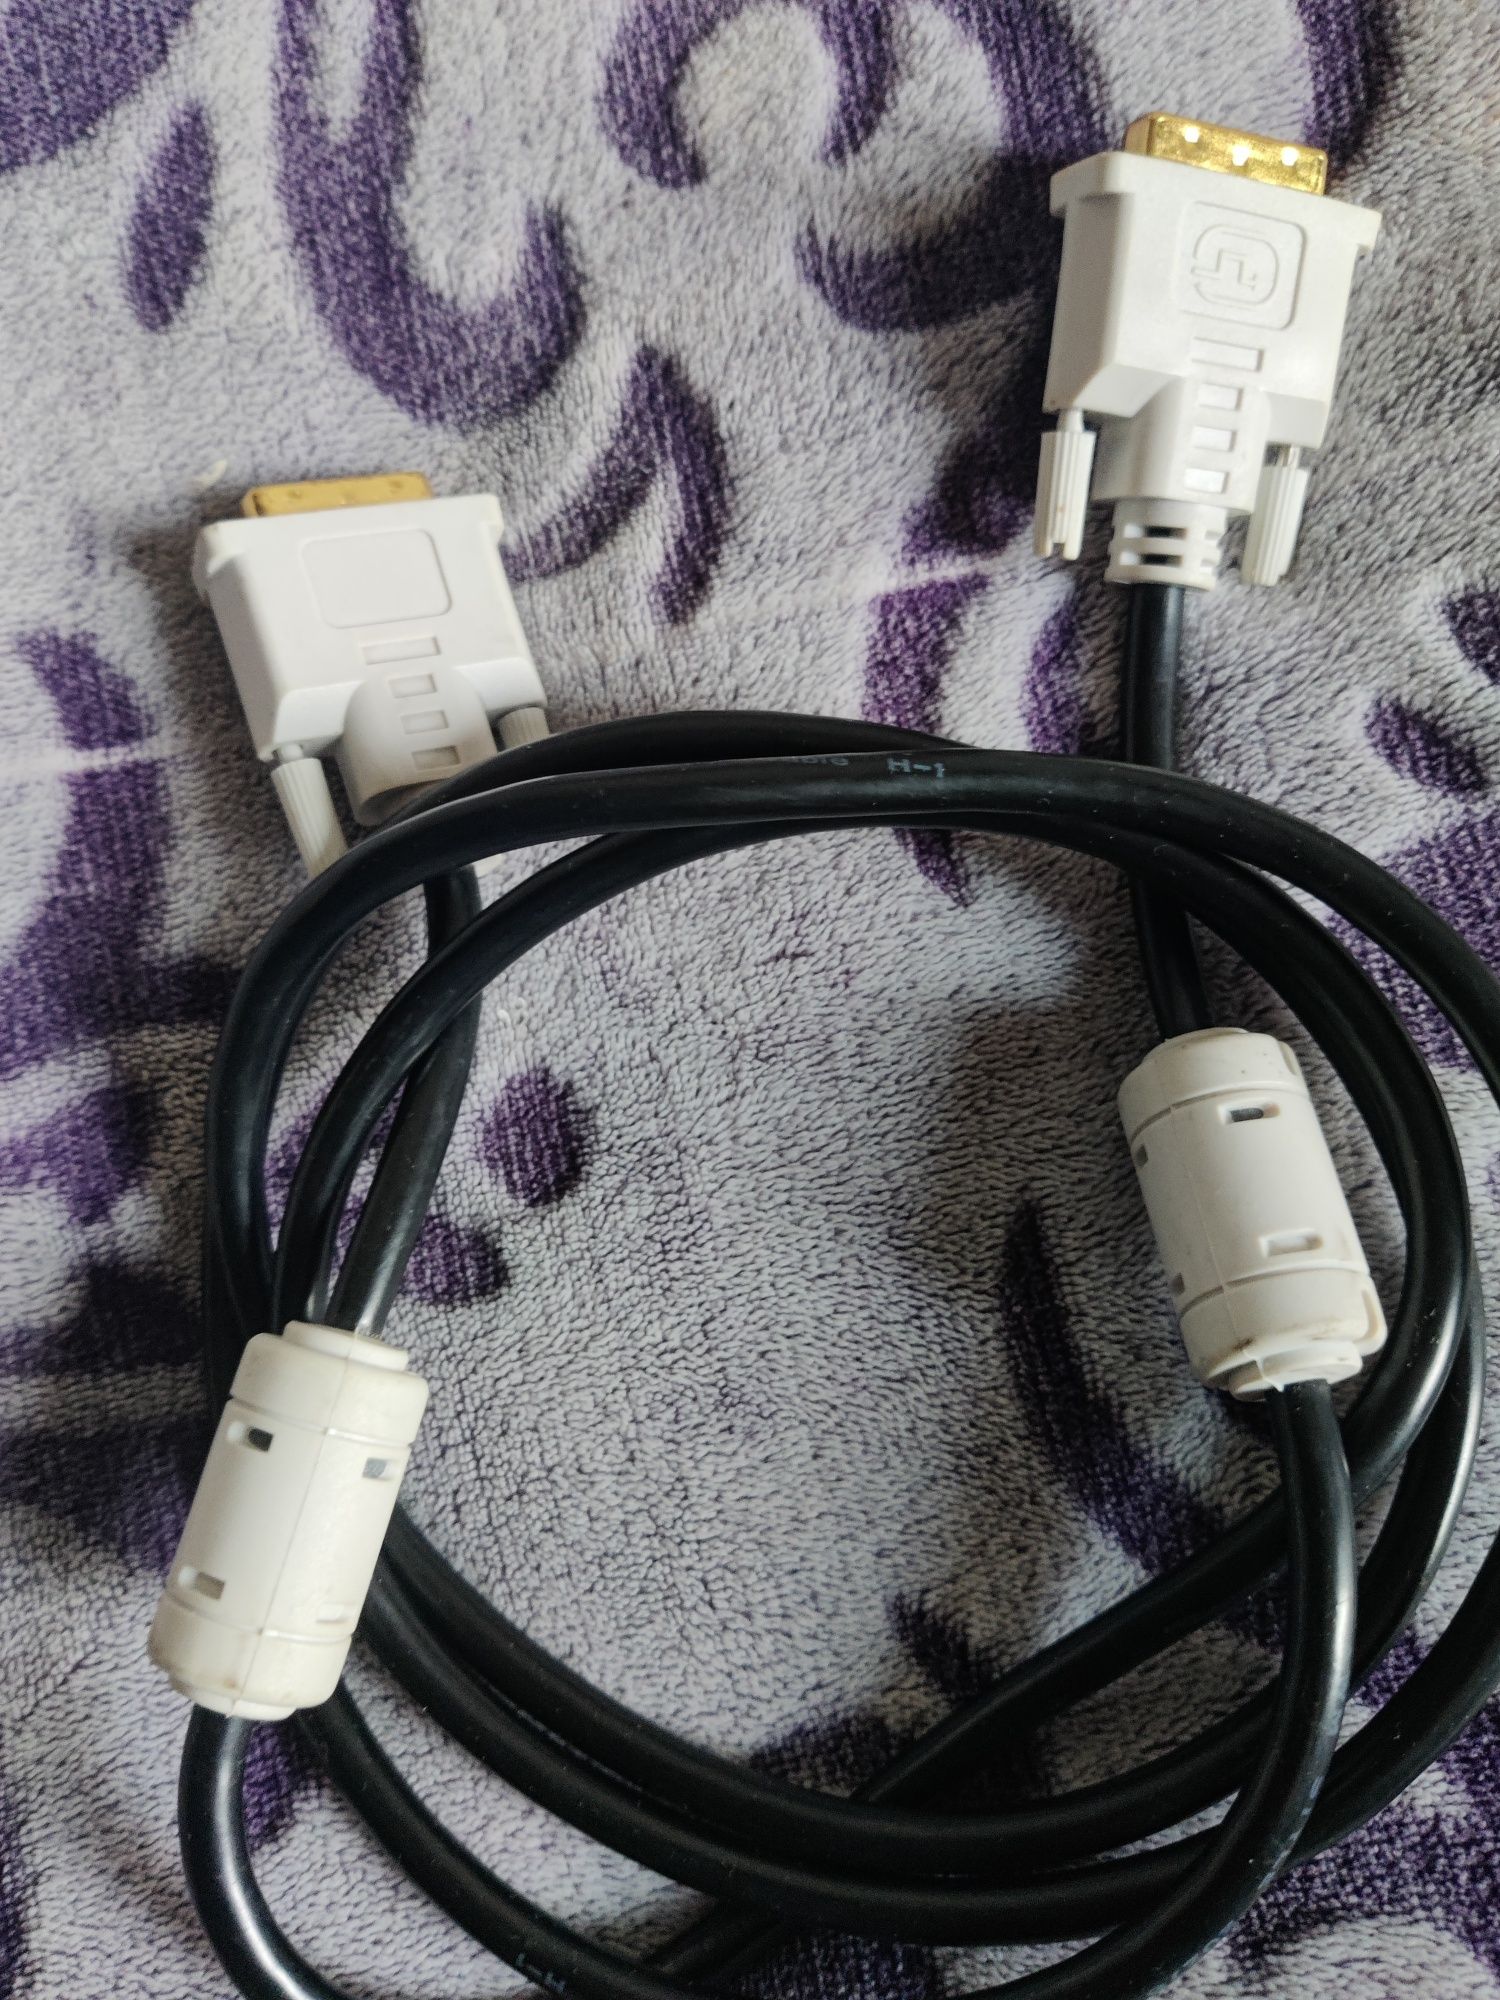 Dvi to dvi кабель